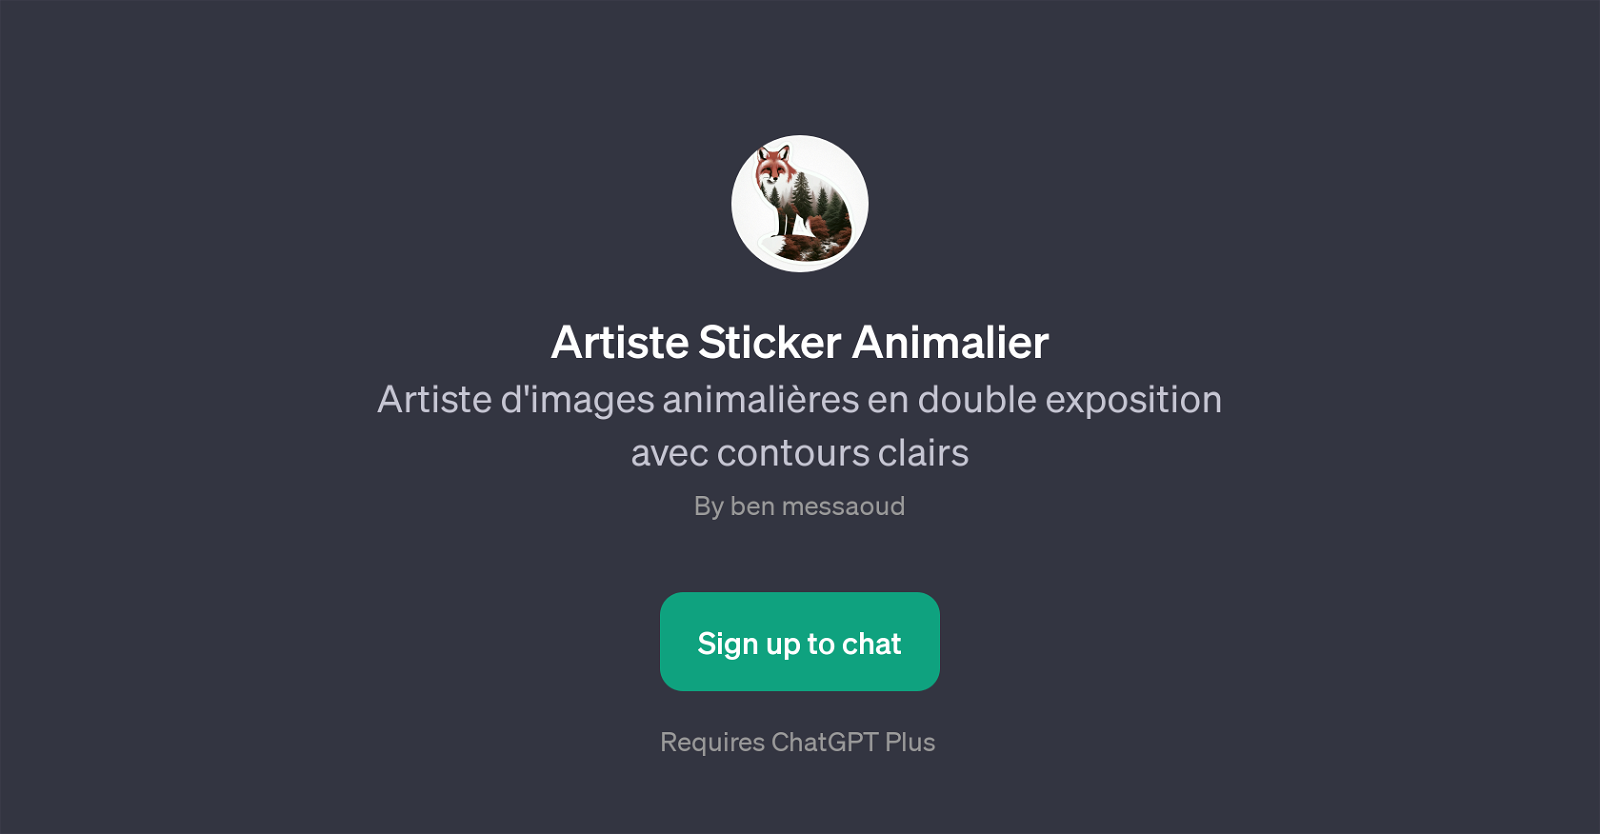 Artiste Sticker Animalier website